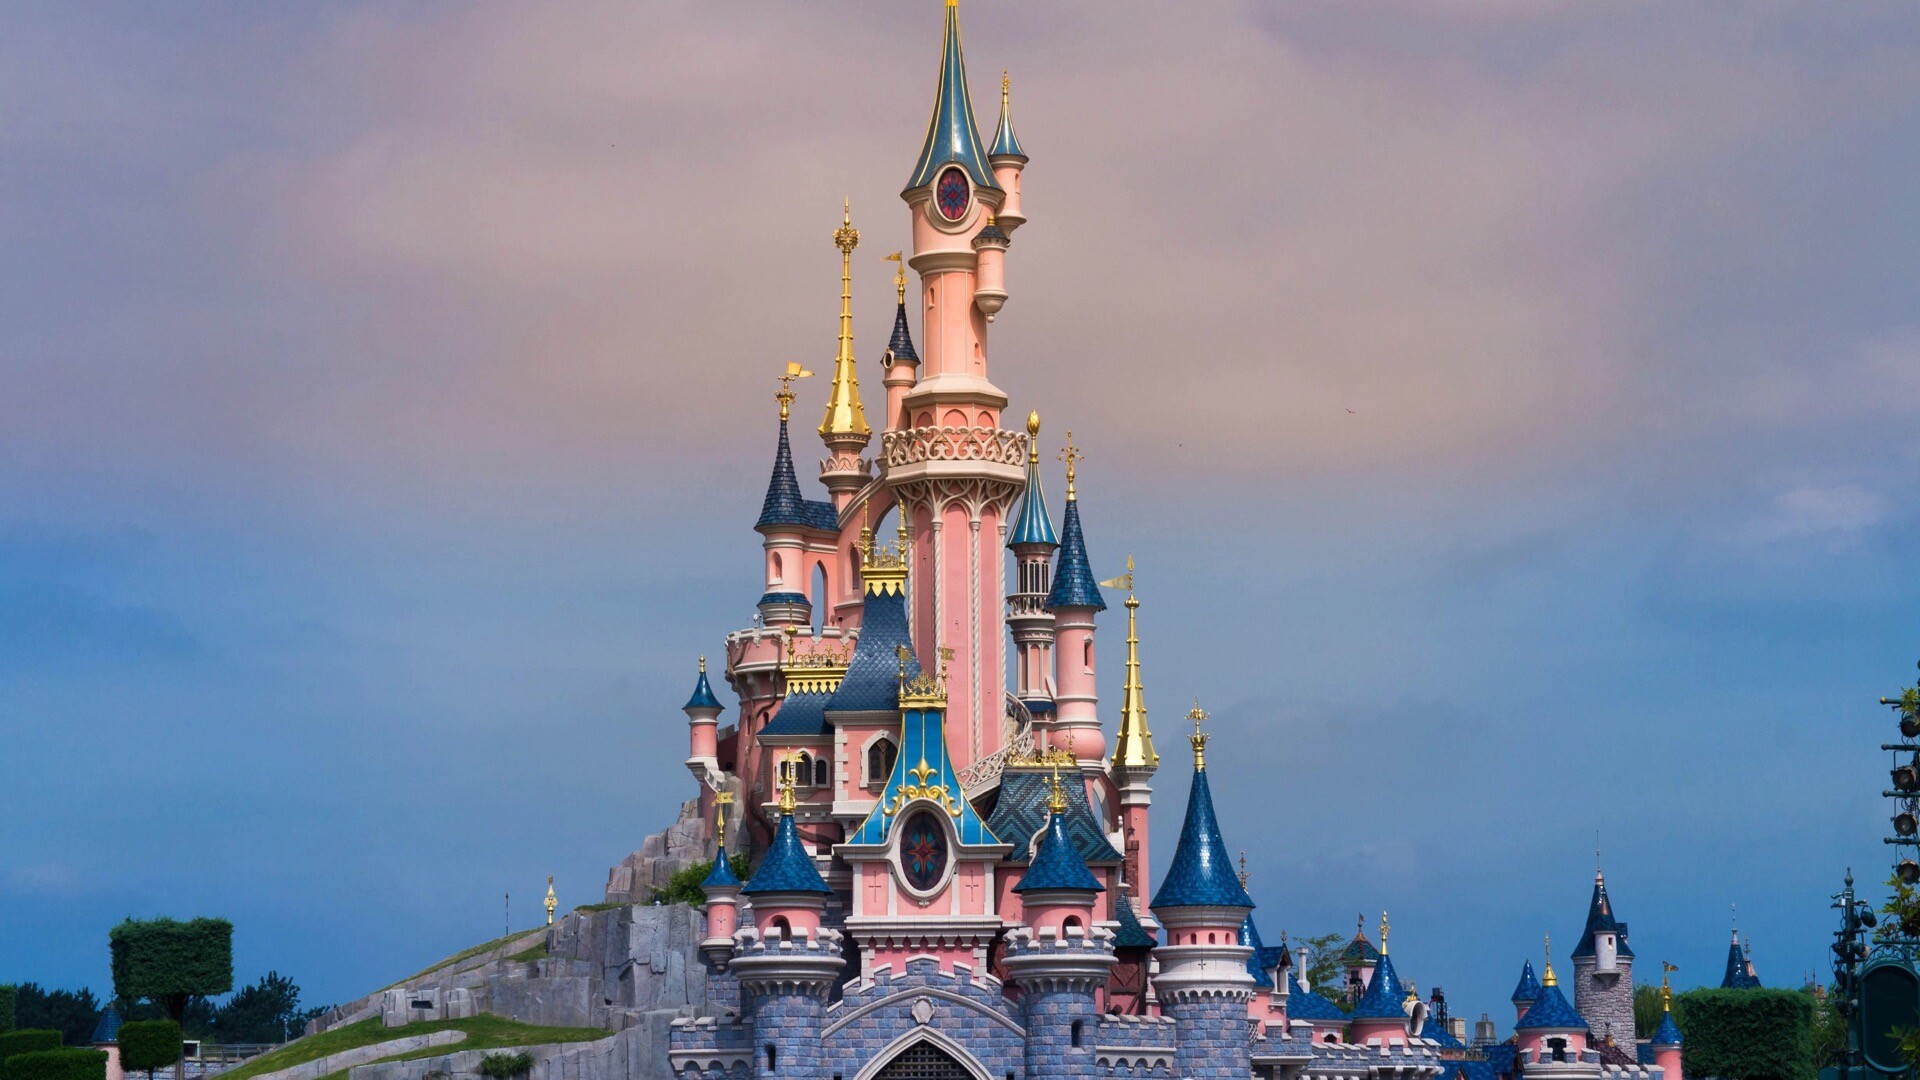 迪士尼乐园城堡动态壁纸